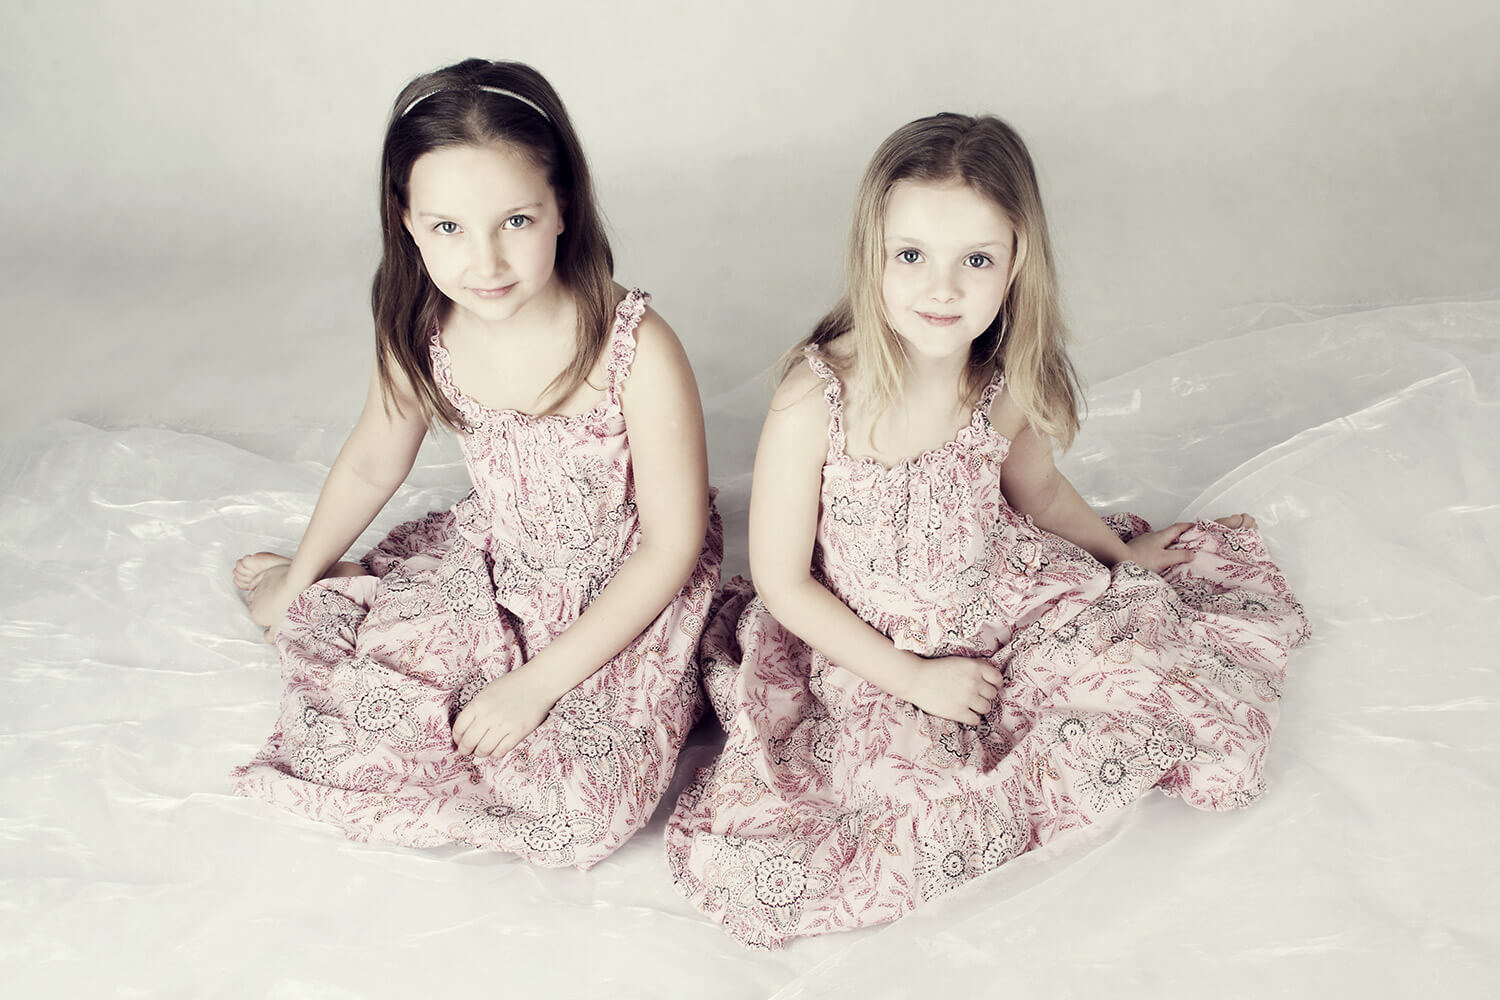 rodinná fotografie dvou sester v květovaných šatech na světlém pozadí